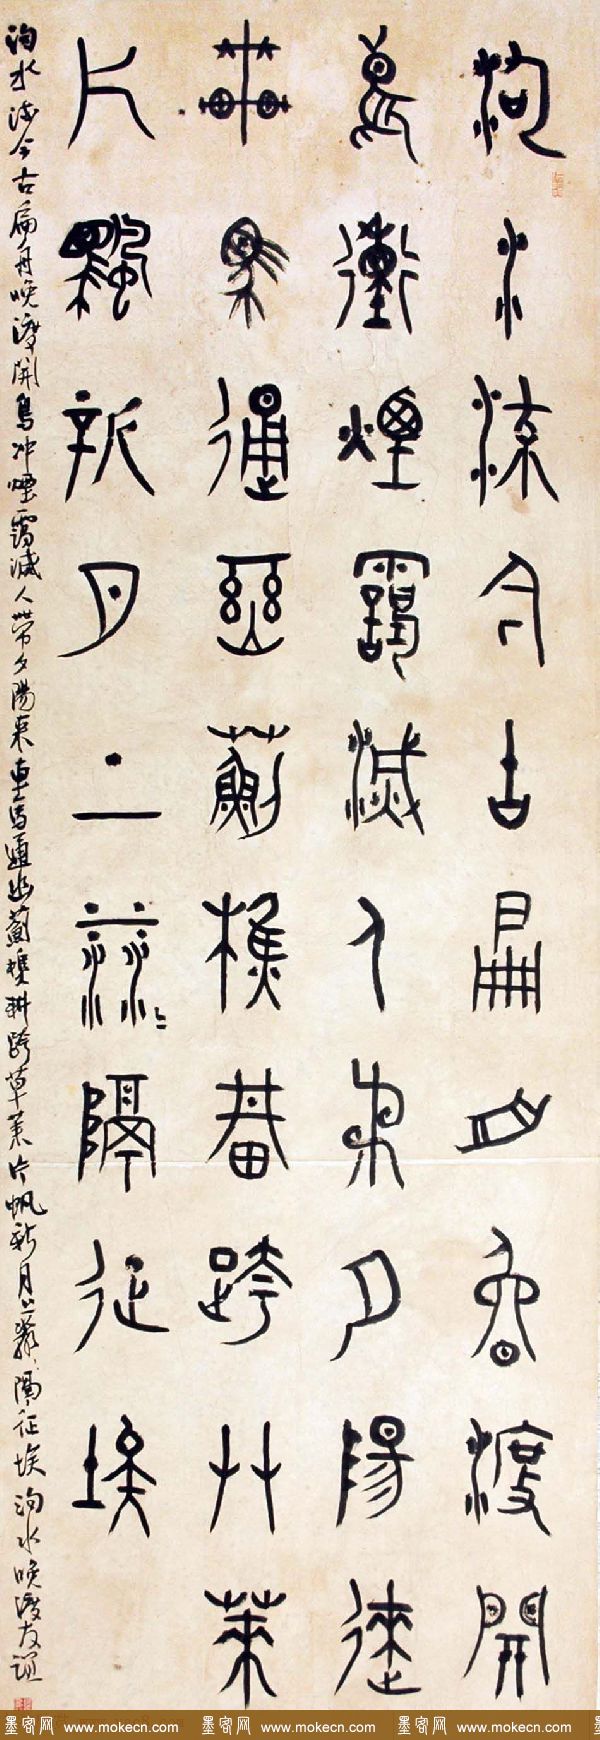 北京王友谊篆书书法作品欣赏